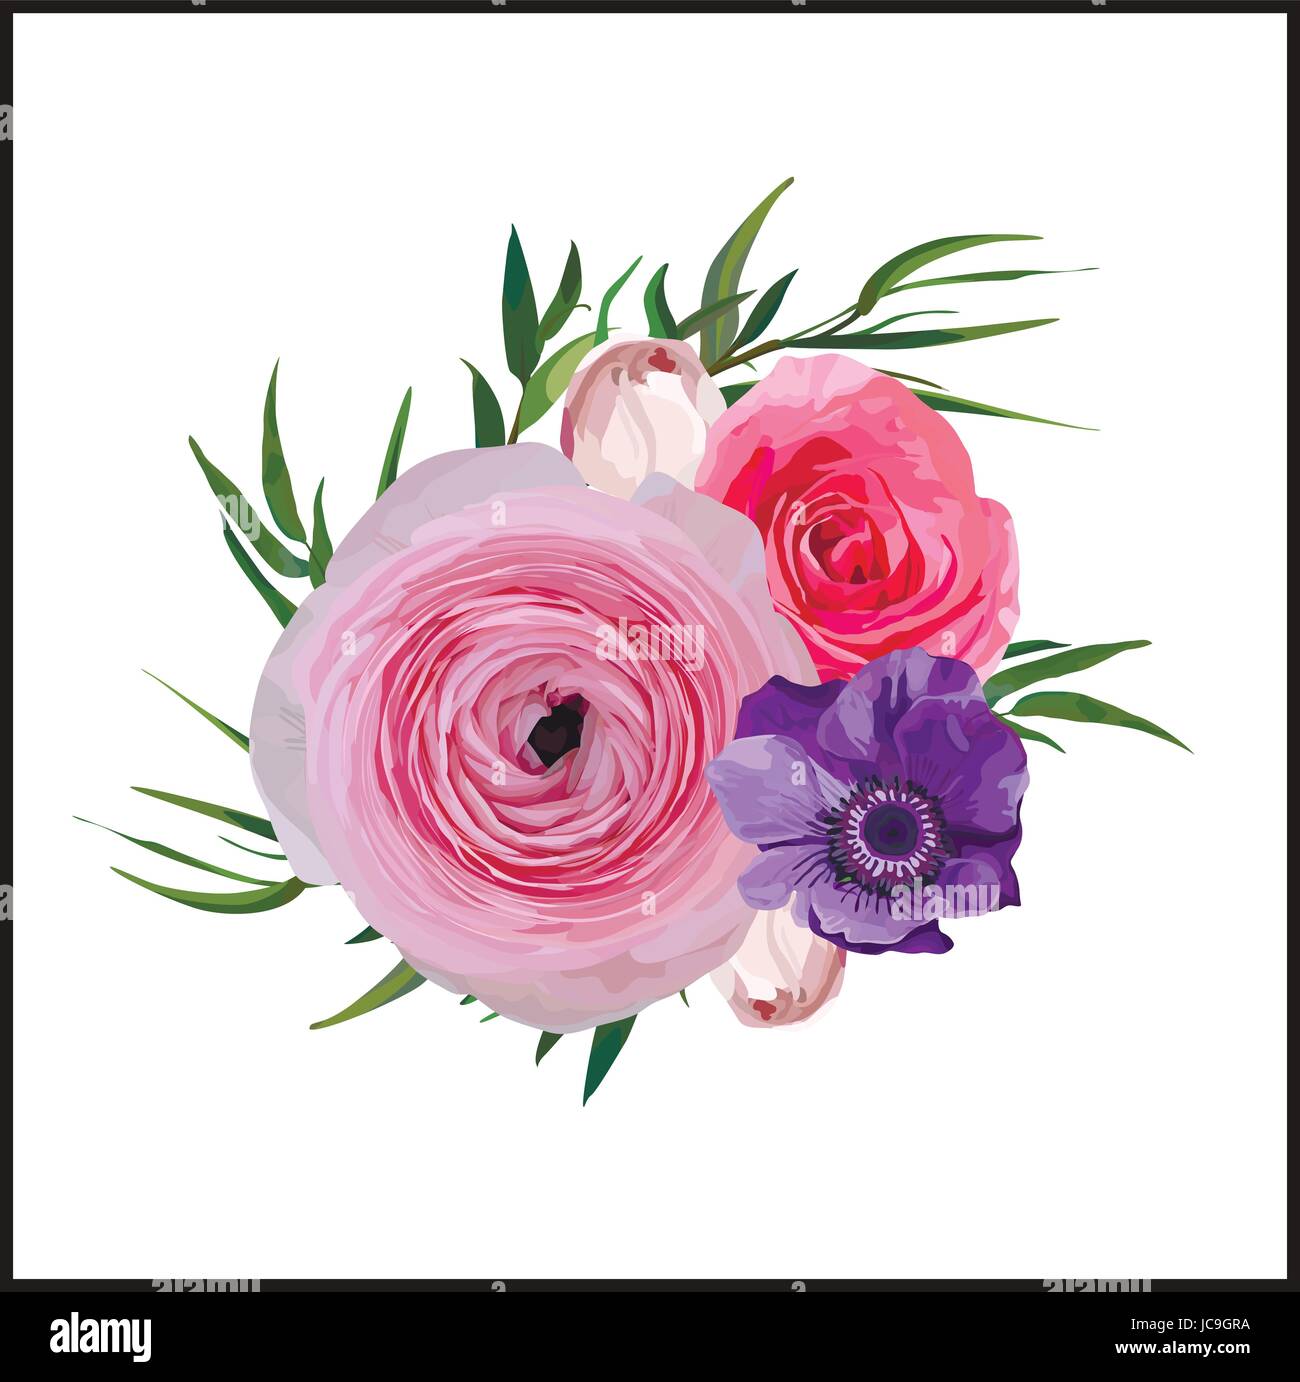 Blumengarten Floral Vintage Pink Rose Ranunculus Blumen Tasten Anemone, feine Agonis dekorative Blätter Blumenstrauß Muster decotative Element Hintergrund Stock Vektor